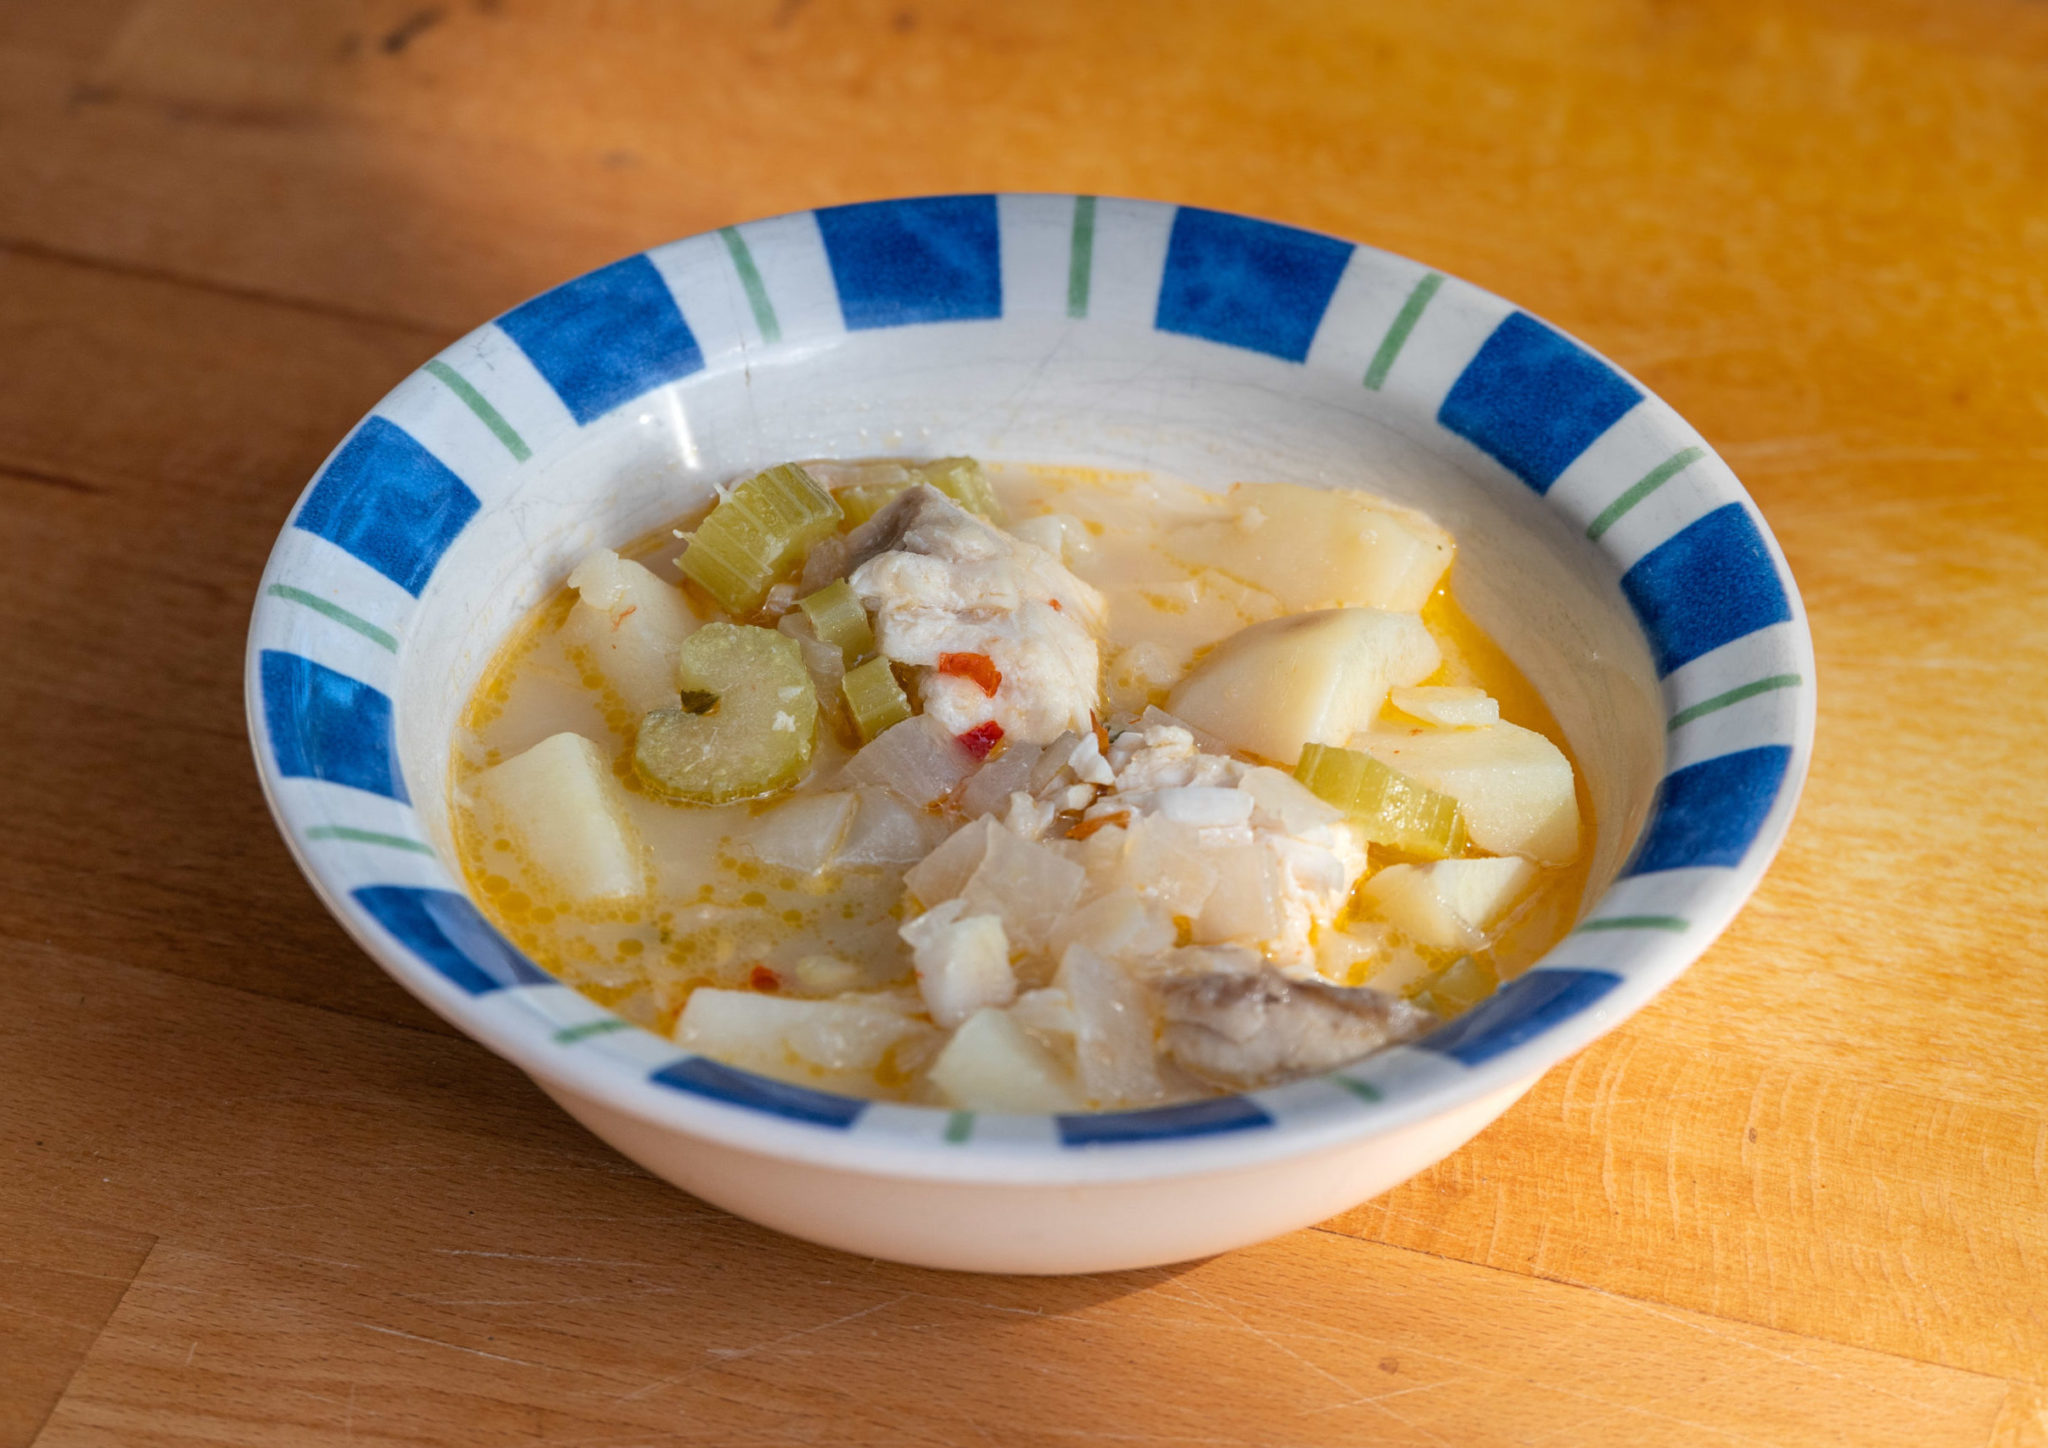 Bahamian boiled fish soup